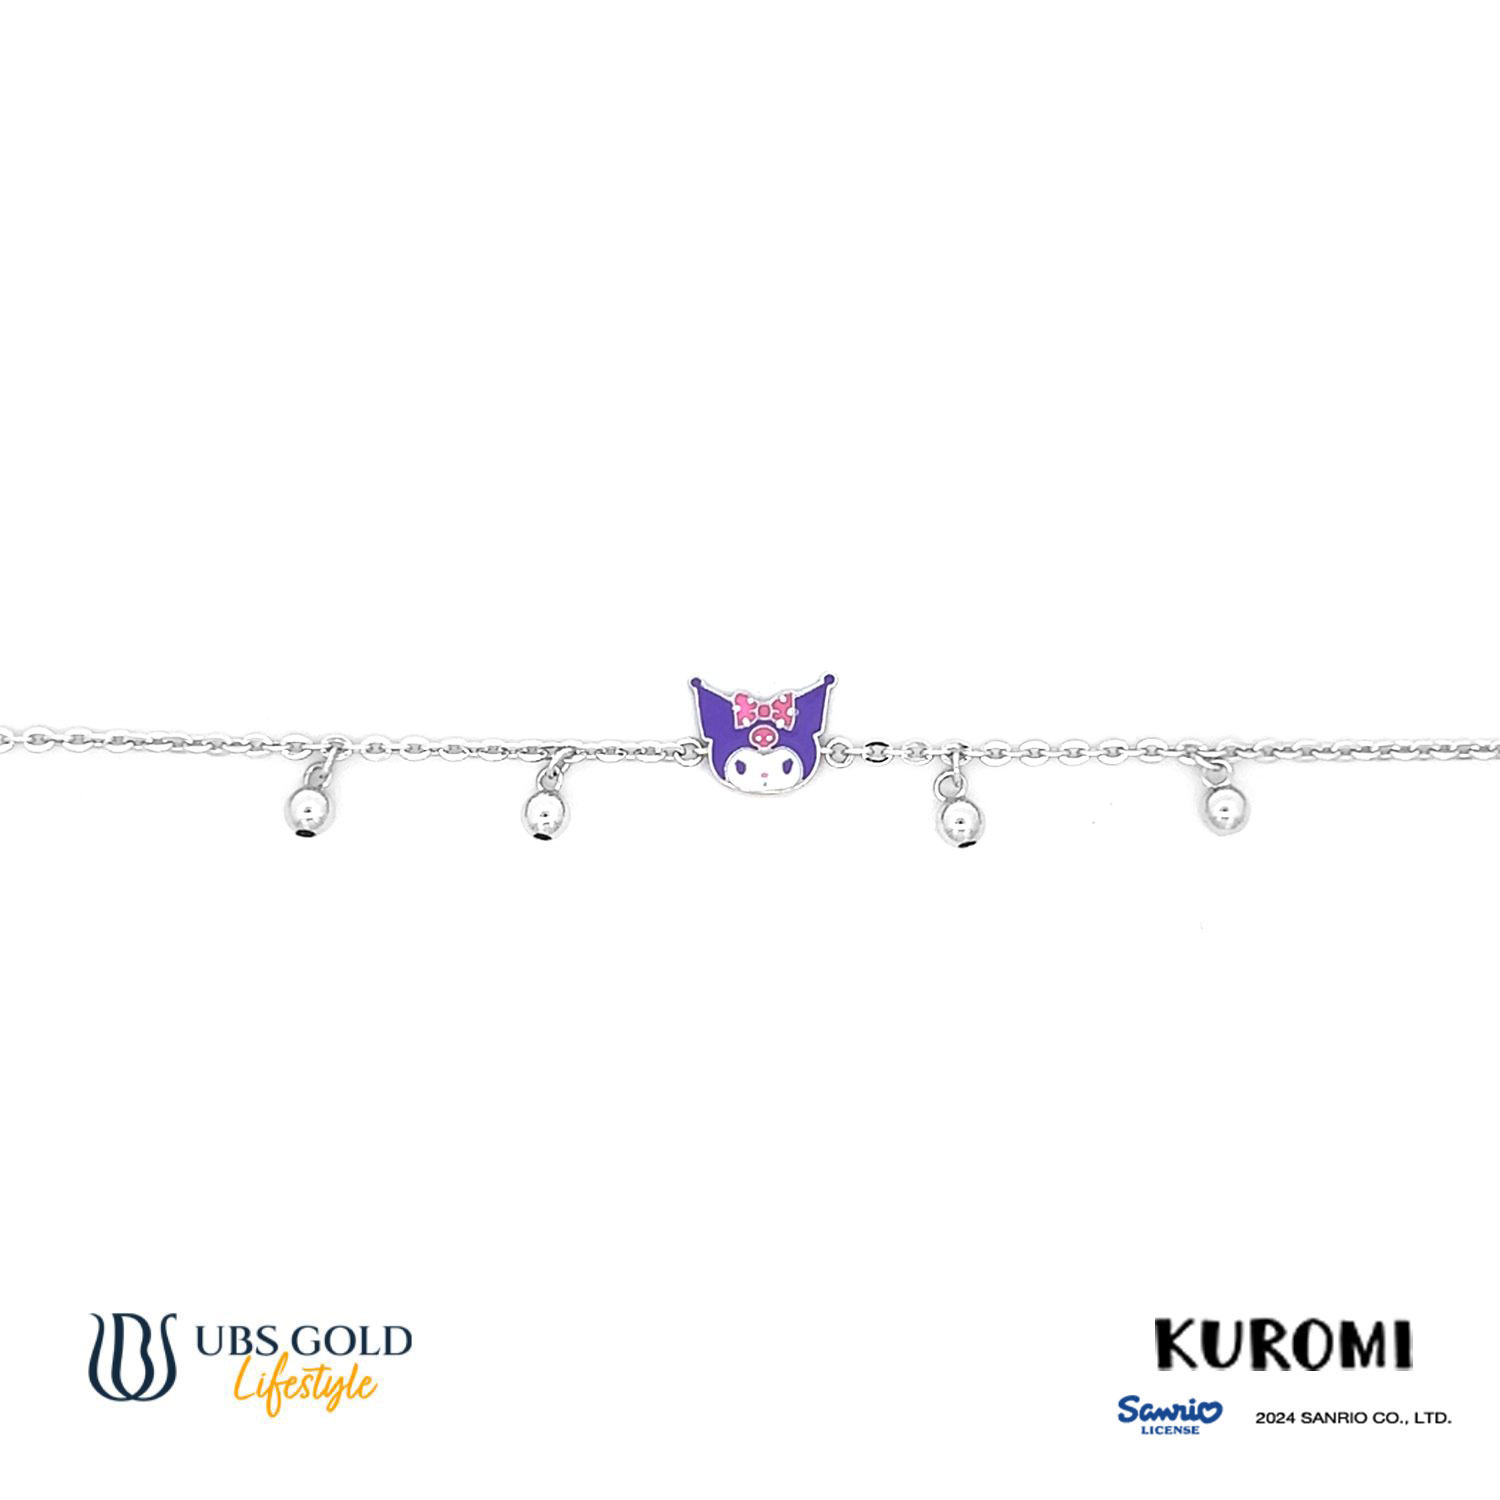 UBS Gold Gelang Emas Anak Sanrio Kuromi - Hgz0076 - 17K